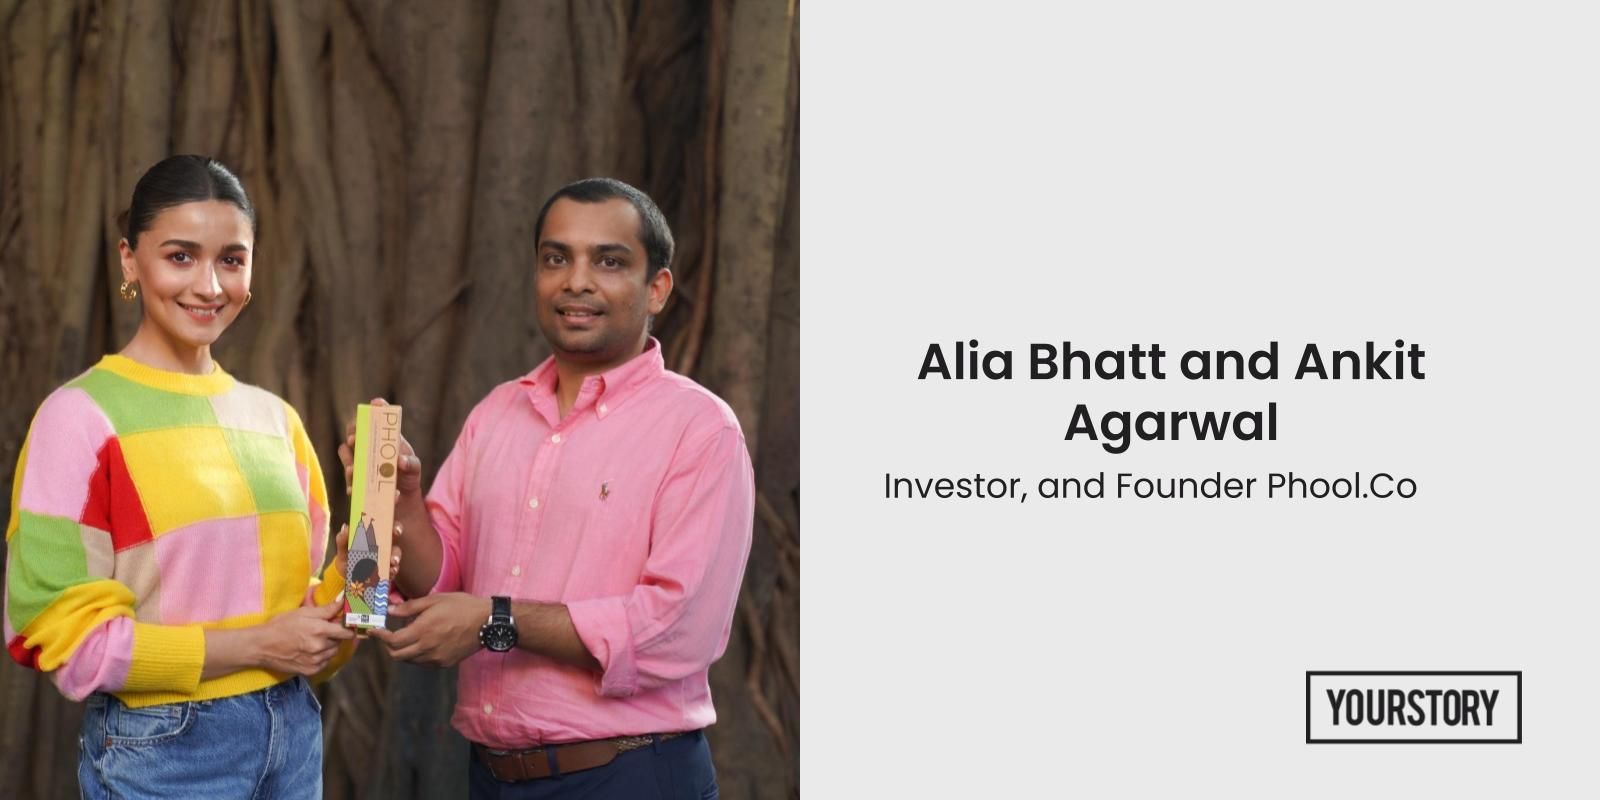 [Funding alert] Alia Bhatt backed Phool raises $8M Series A investment